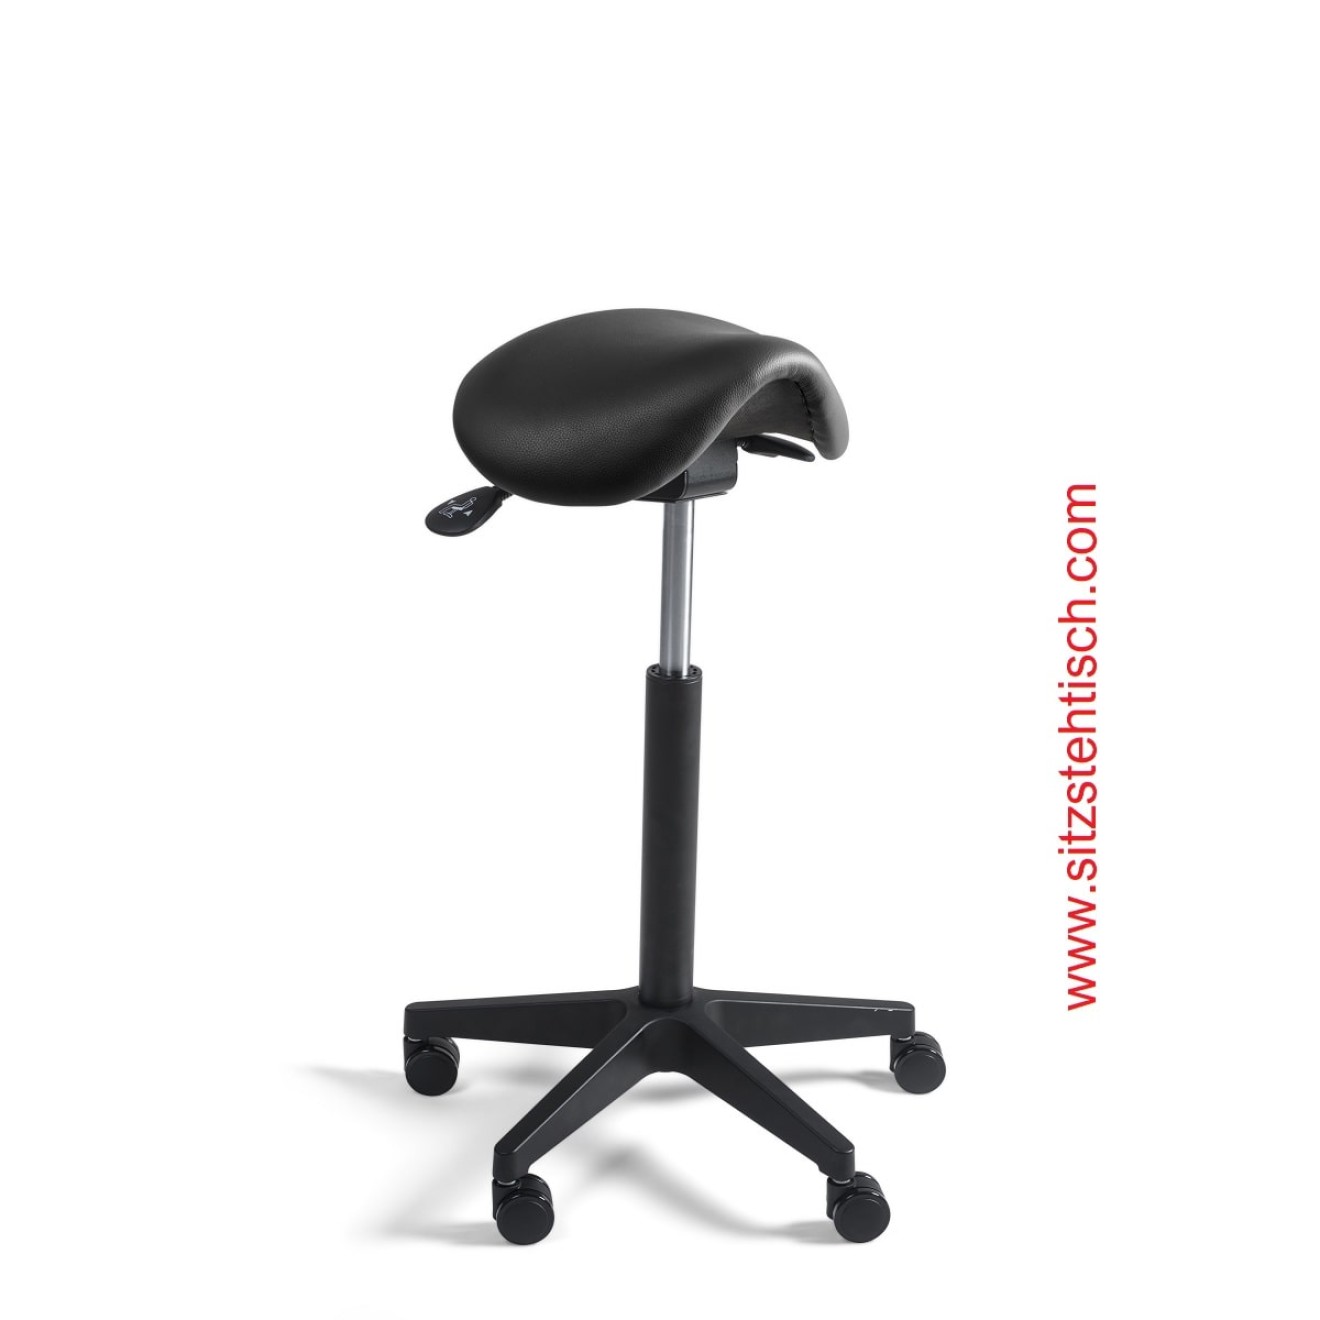 Sattelhocker mit schmalem Sitz - Sitzhöhen- und Sitzwinkelverstellung - Bezug Kunstleder schwarz - Belastbarkeit bis 125 kg - 5 Jahre Garantie - 103968